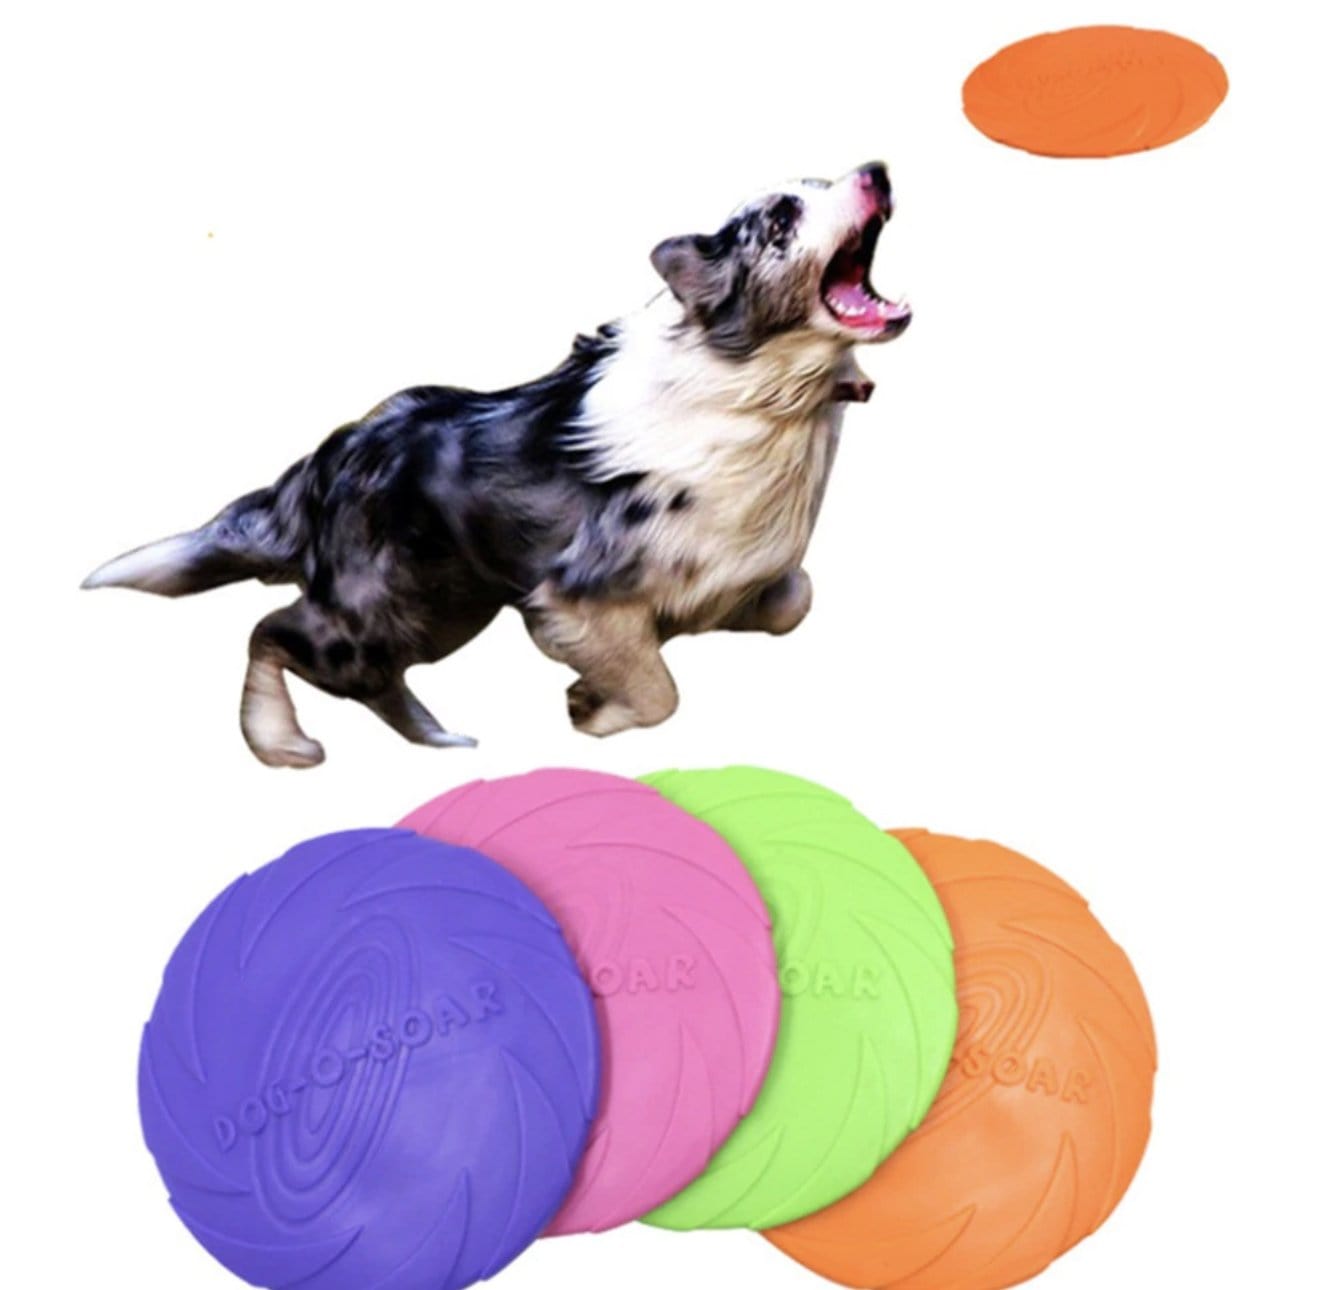 Frisbee pour chien : pratique, apprentissage et prix - PagesJaunes